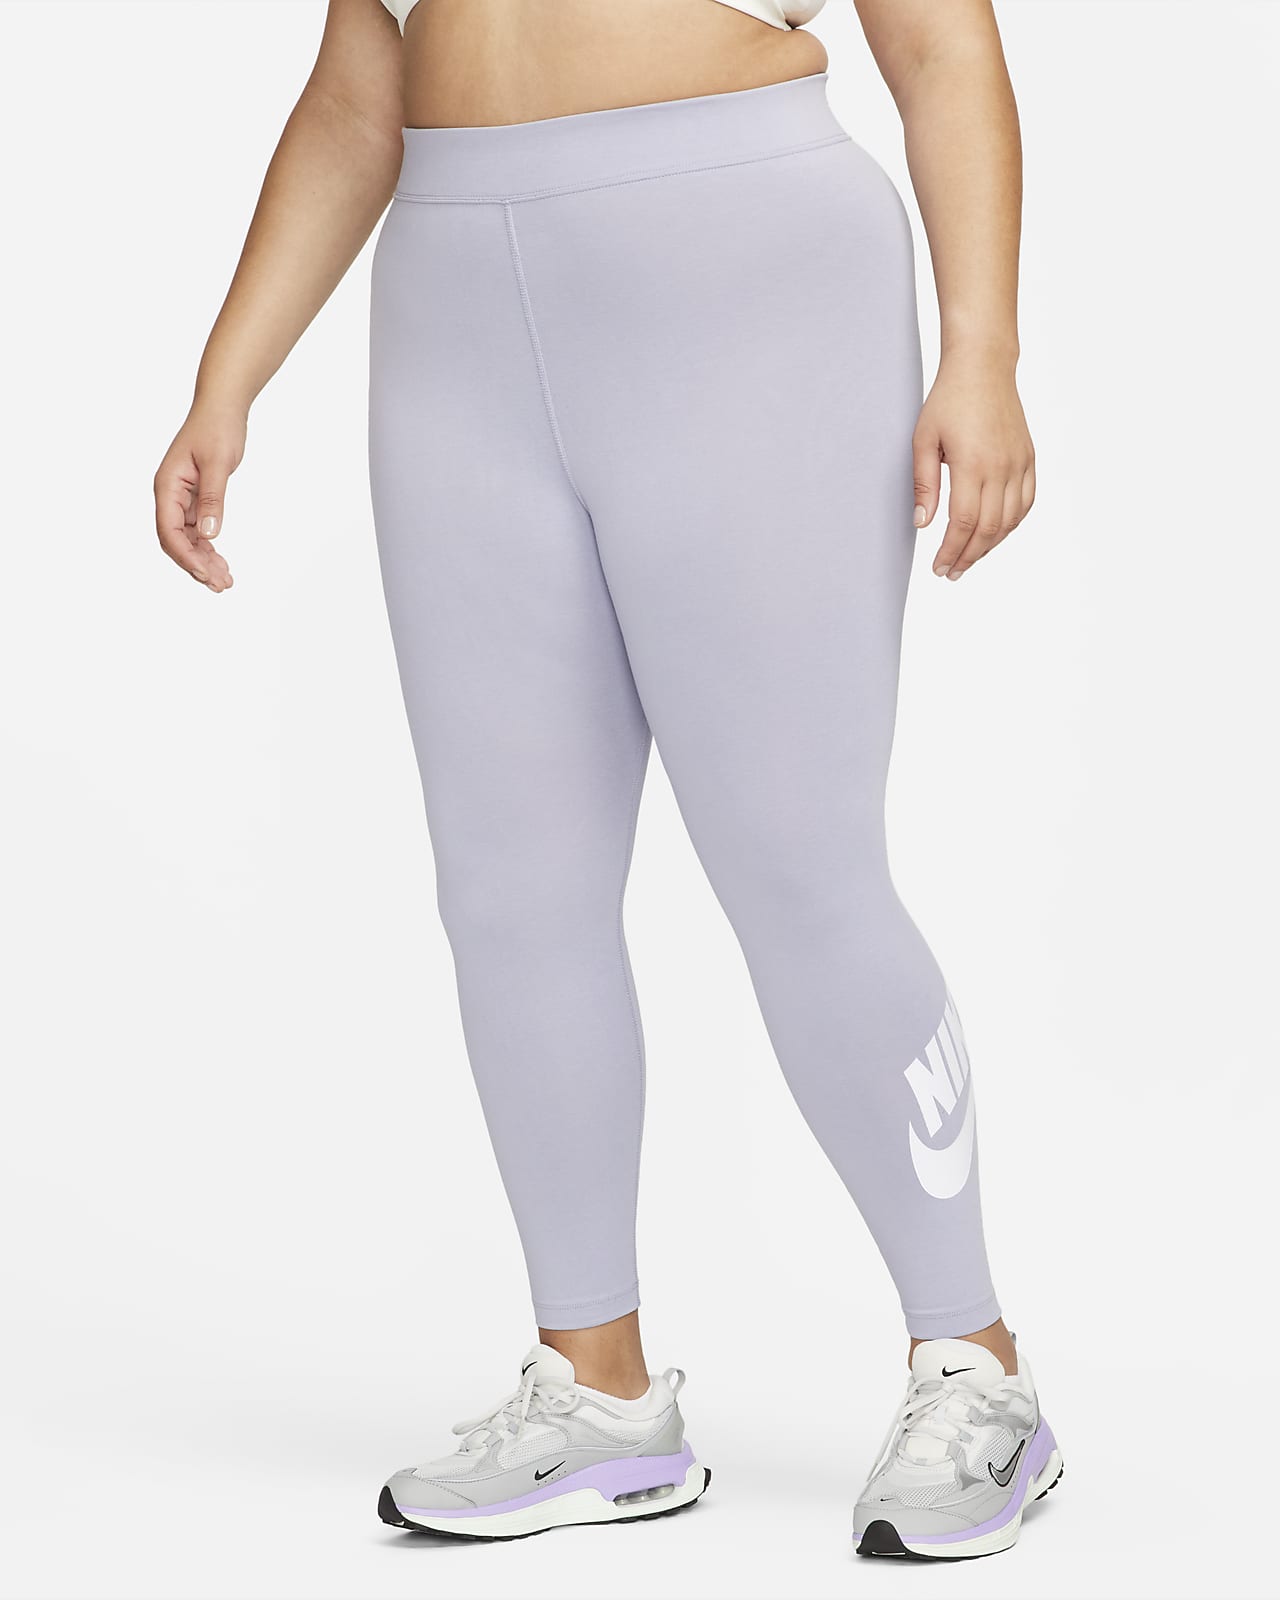 Leggings de cintura alta para mujer talla grande Nike Sportswear Nike.com